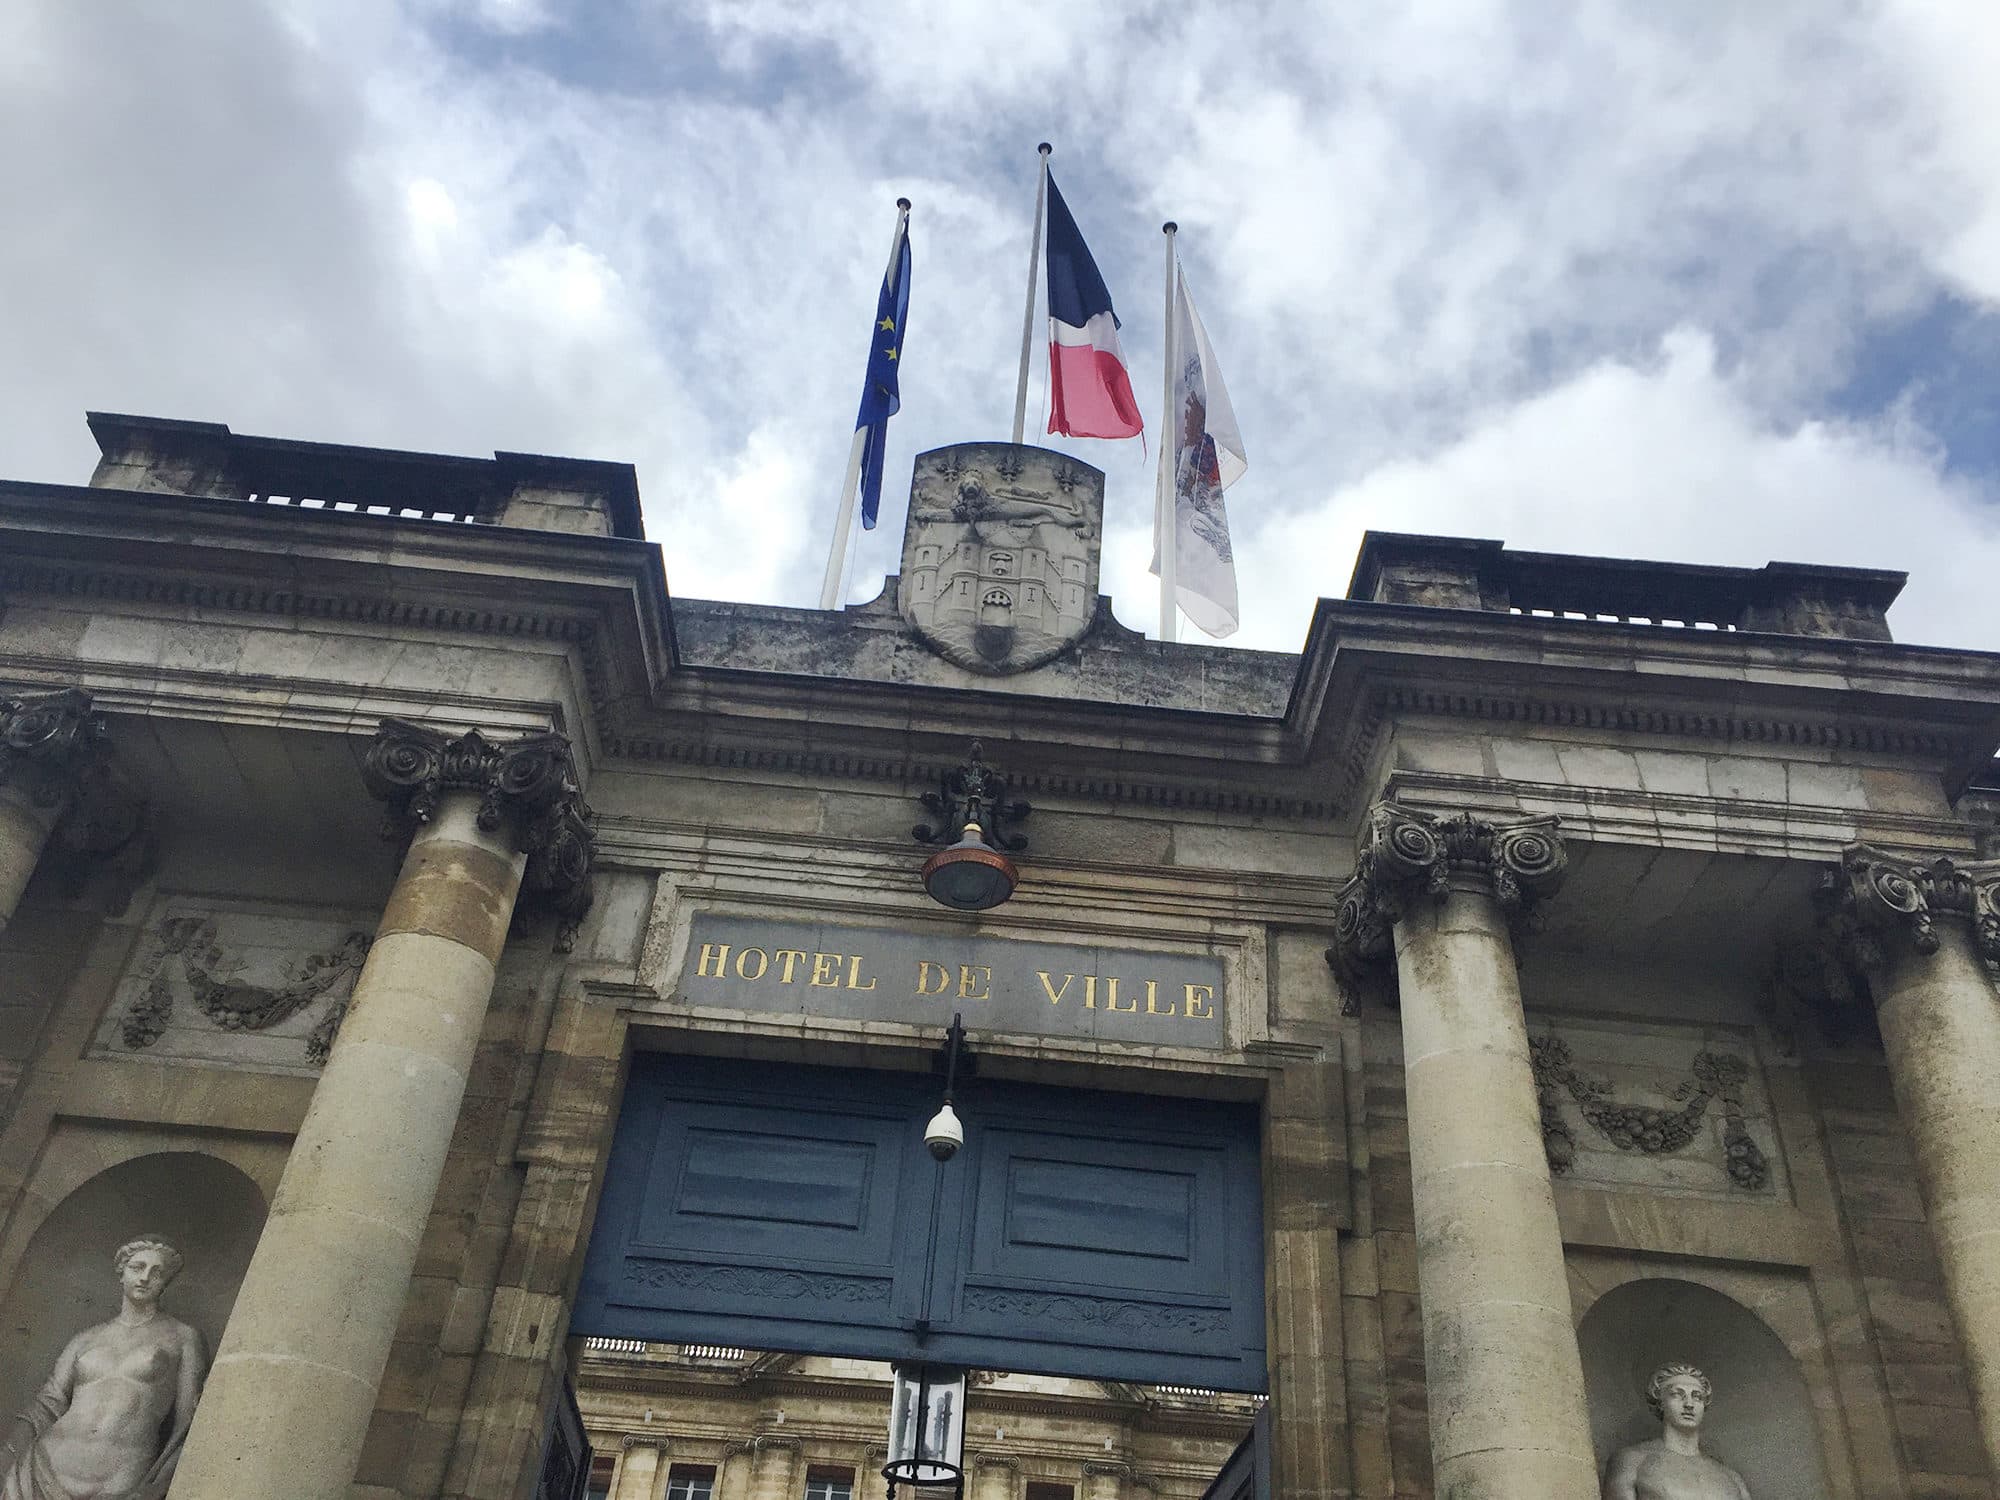 La démocratie locale « totalement bafouée » par la mairie, selon Bordeaux Ensemble